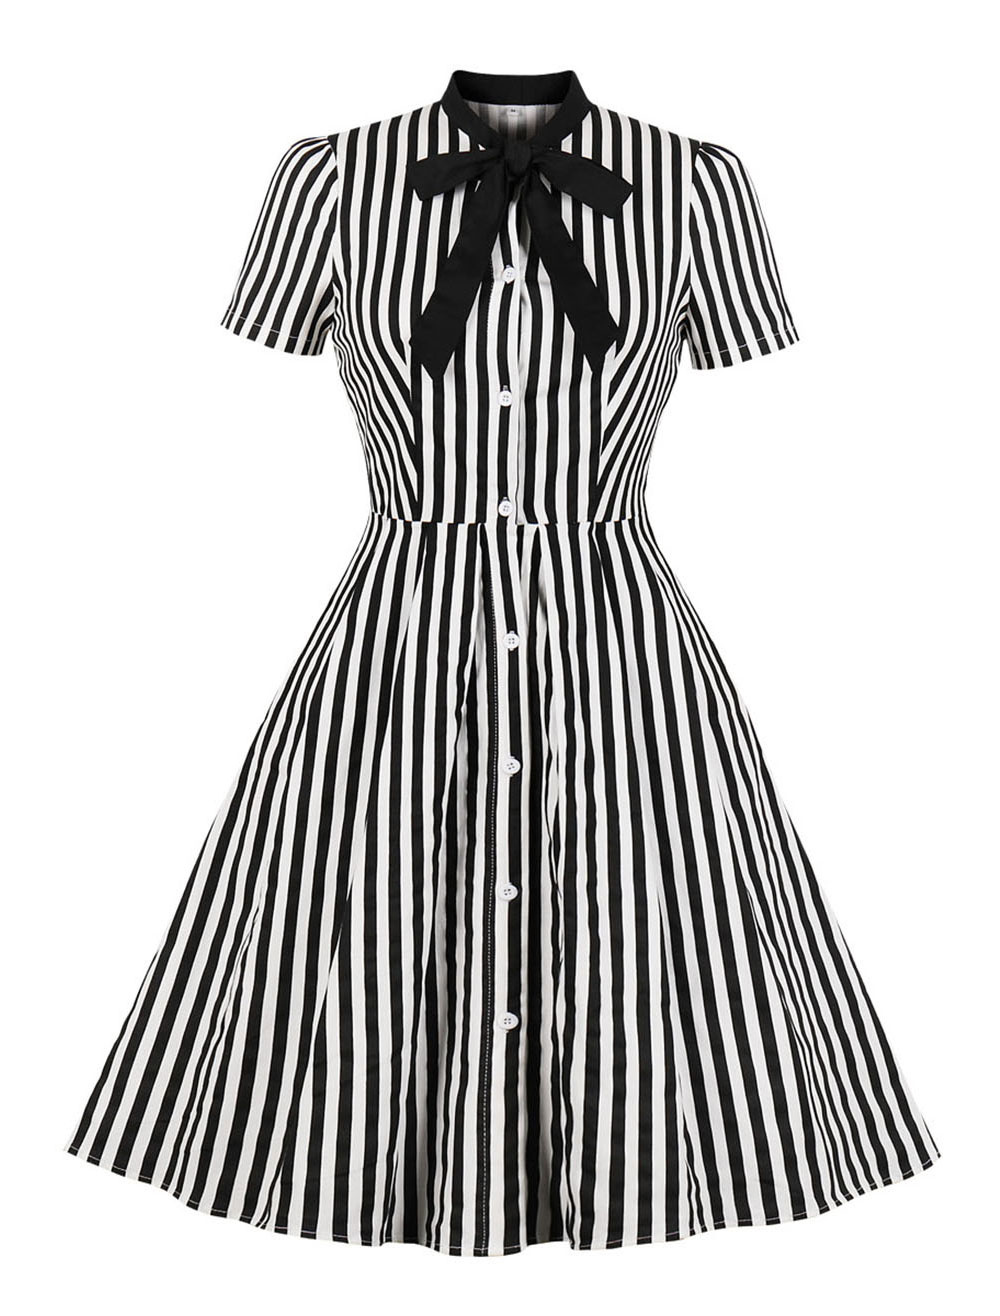 ストライプ レトロワンピース 蝶ネクタイ 半袖 ヴィンテージ シャツドレス 1950年代女性 ボタン アップドレス Milanoo Jp